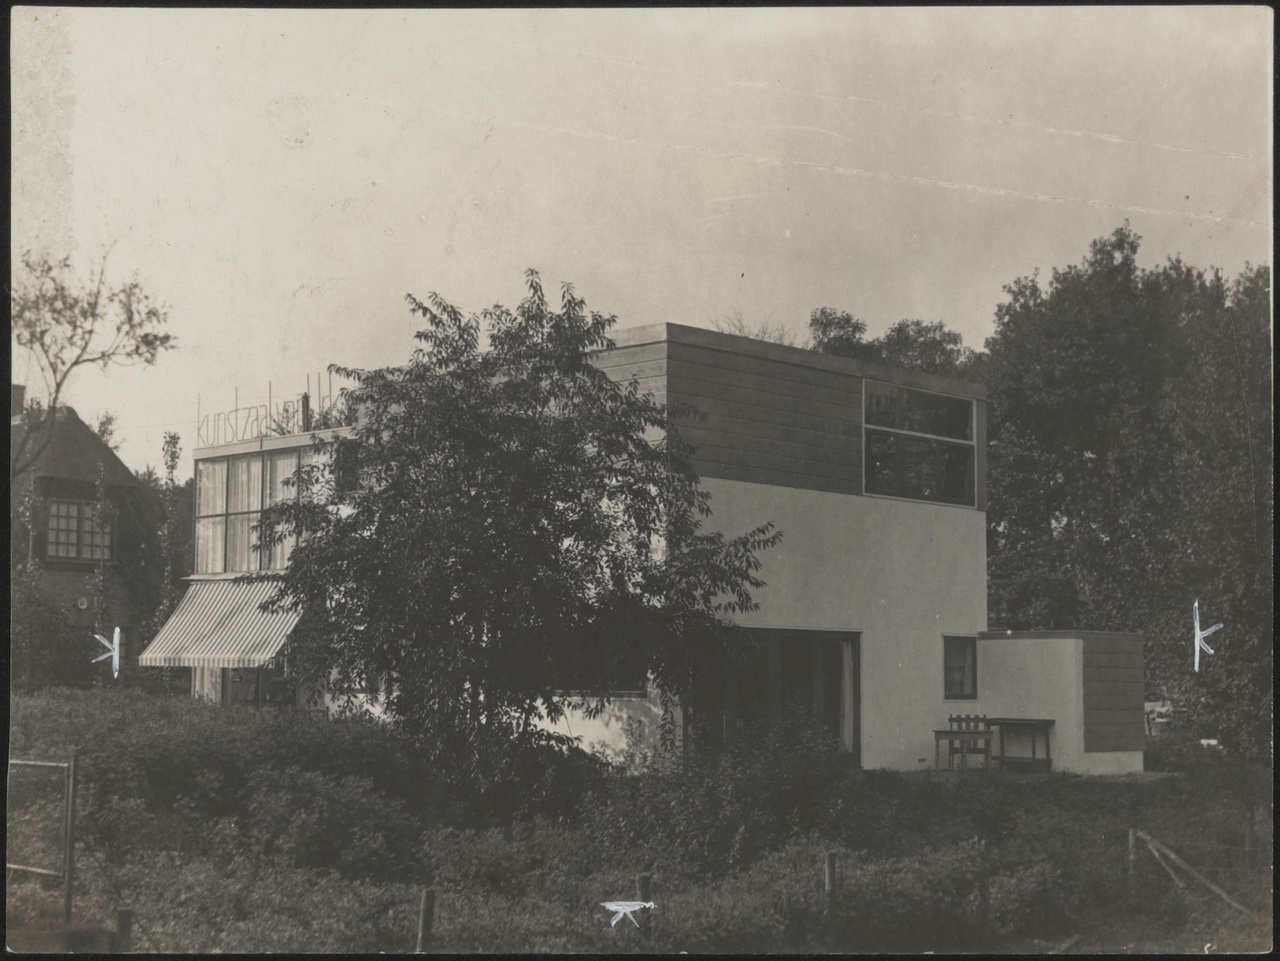 Afbeelding van woning/atelier v.Urk vanuit het zuid-oosten, ca.1931